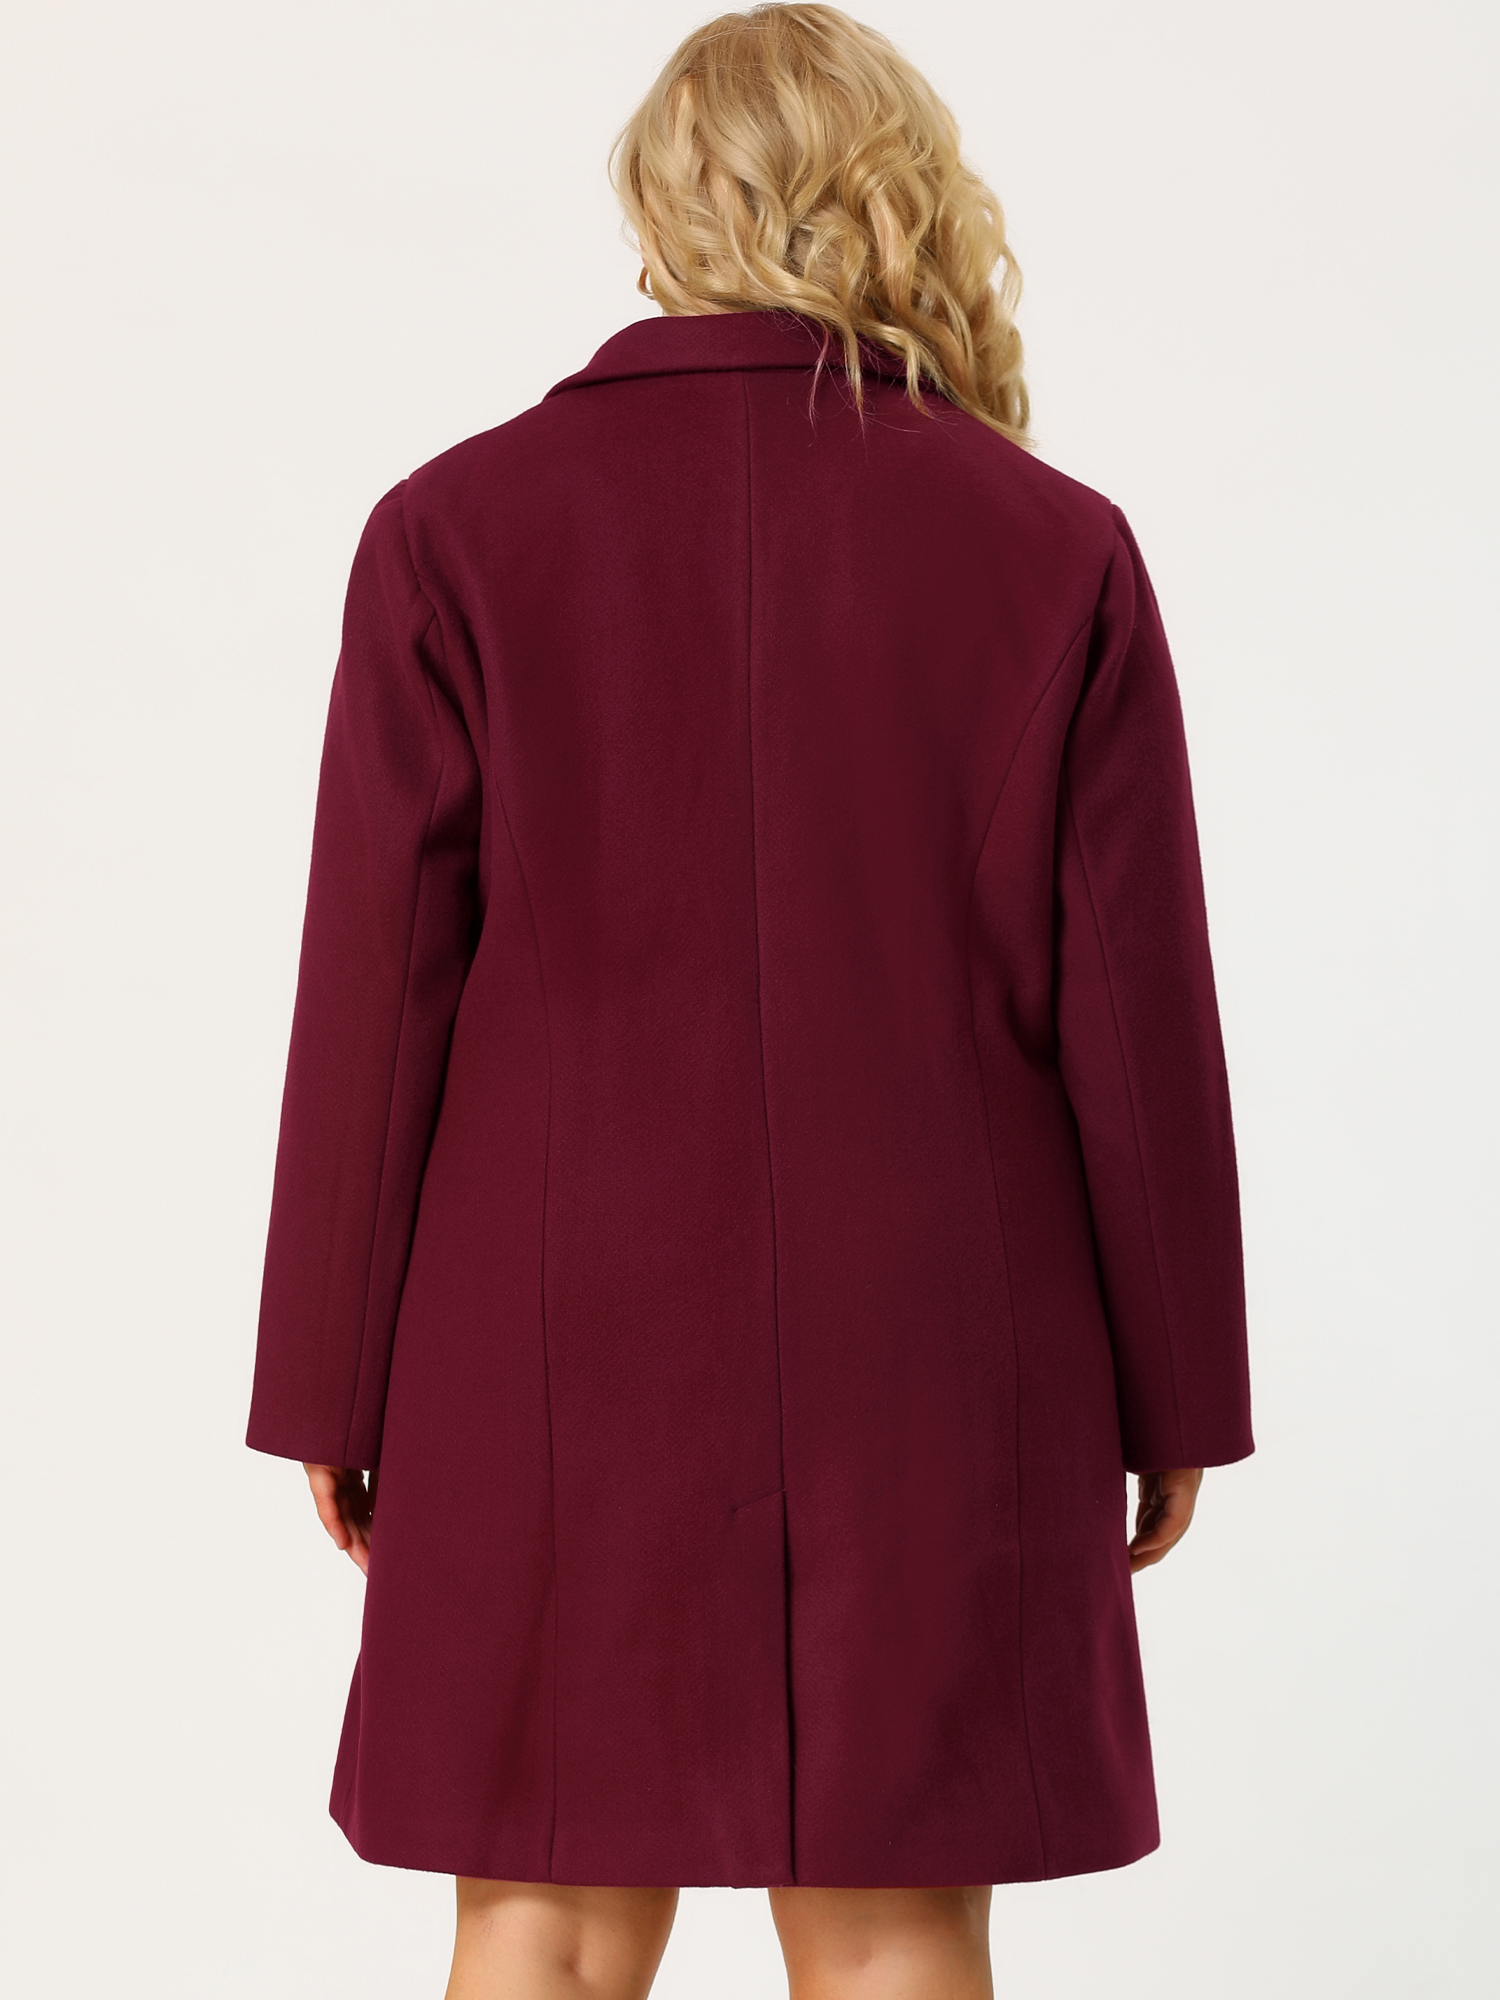 Unique Bargains Agnes Orinda Plus Size Long Coat for Women Notched Lapel  Warm Winter Double Breasted